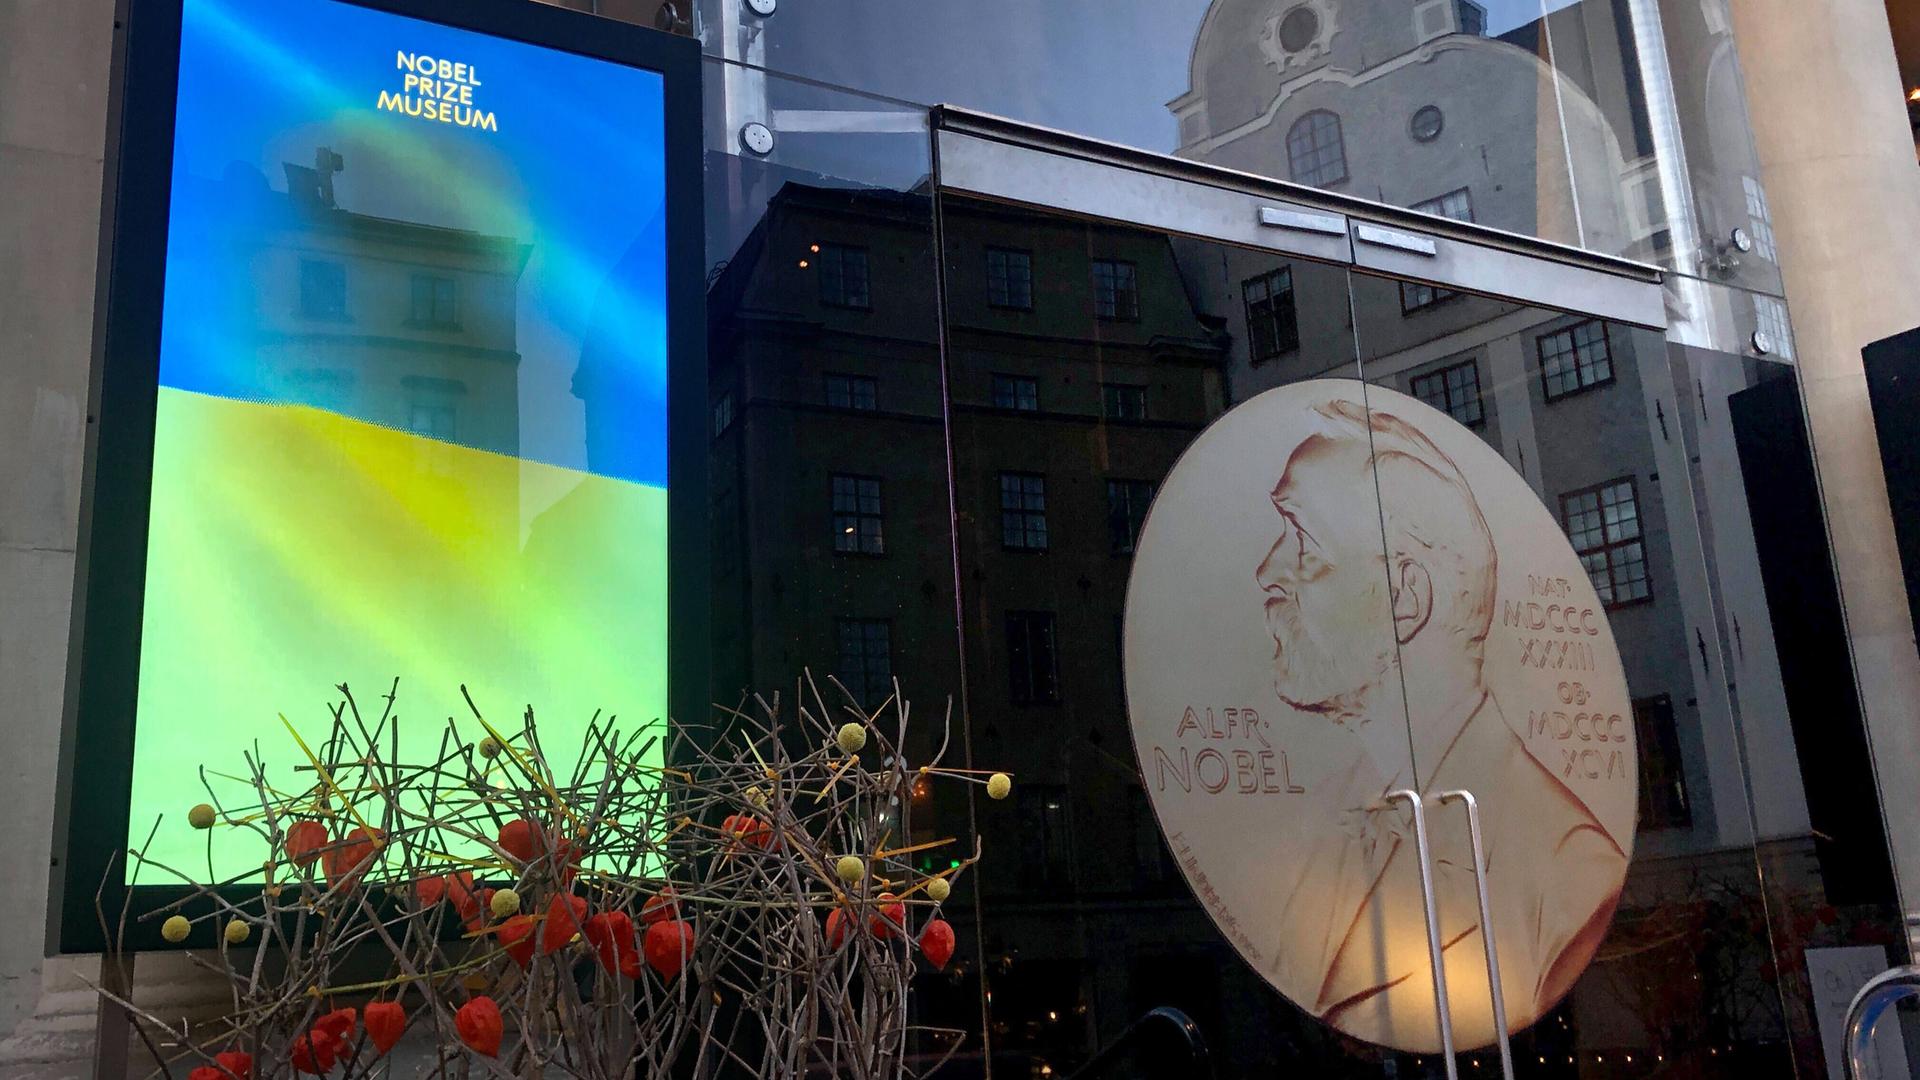 Auf einem Bildschirm vor dem Nobelpreismuseum in Stockholm ist eine Ukraine-Flagge zu sehen mit dem Schriftzug "May peace come to this piece of our beautiful world".